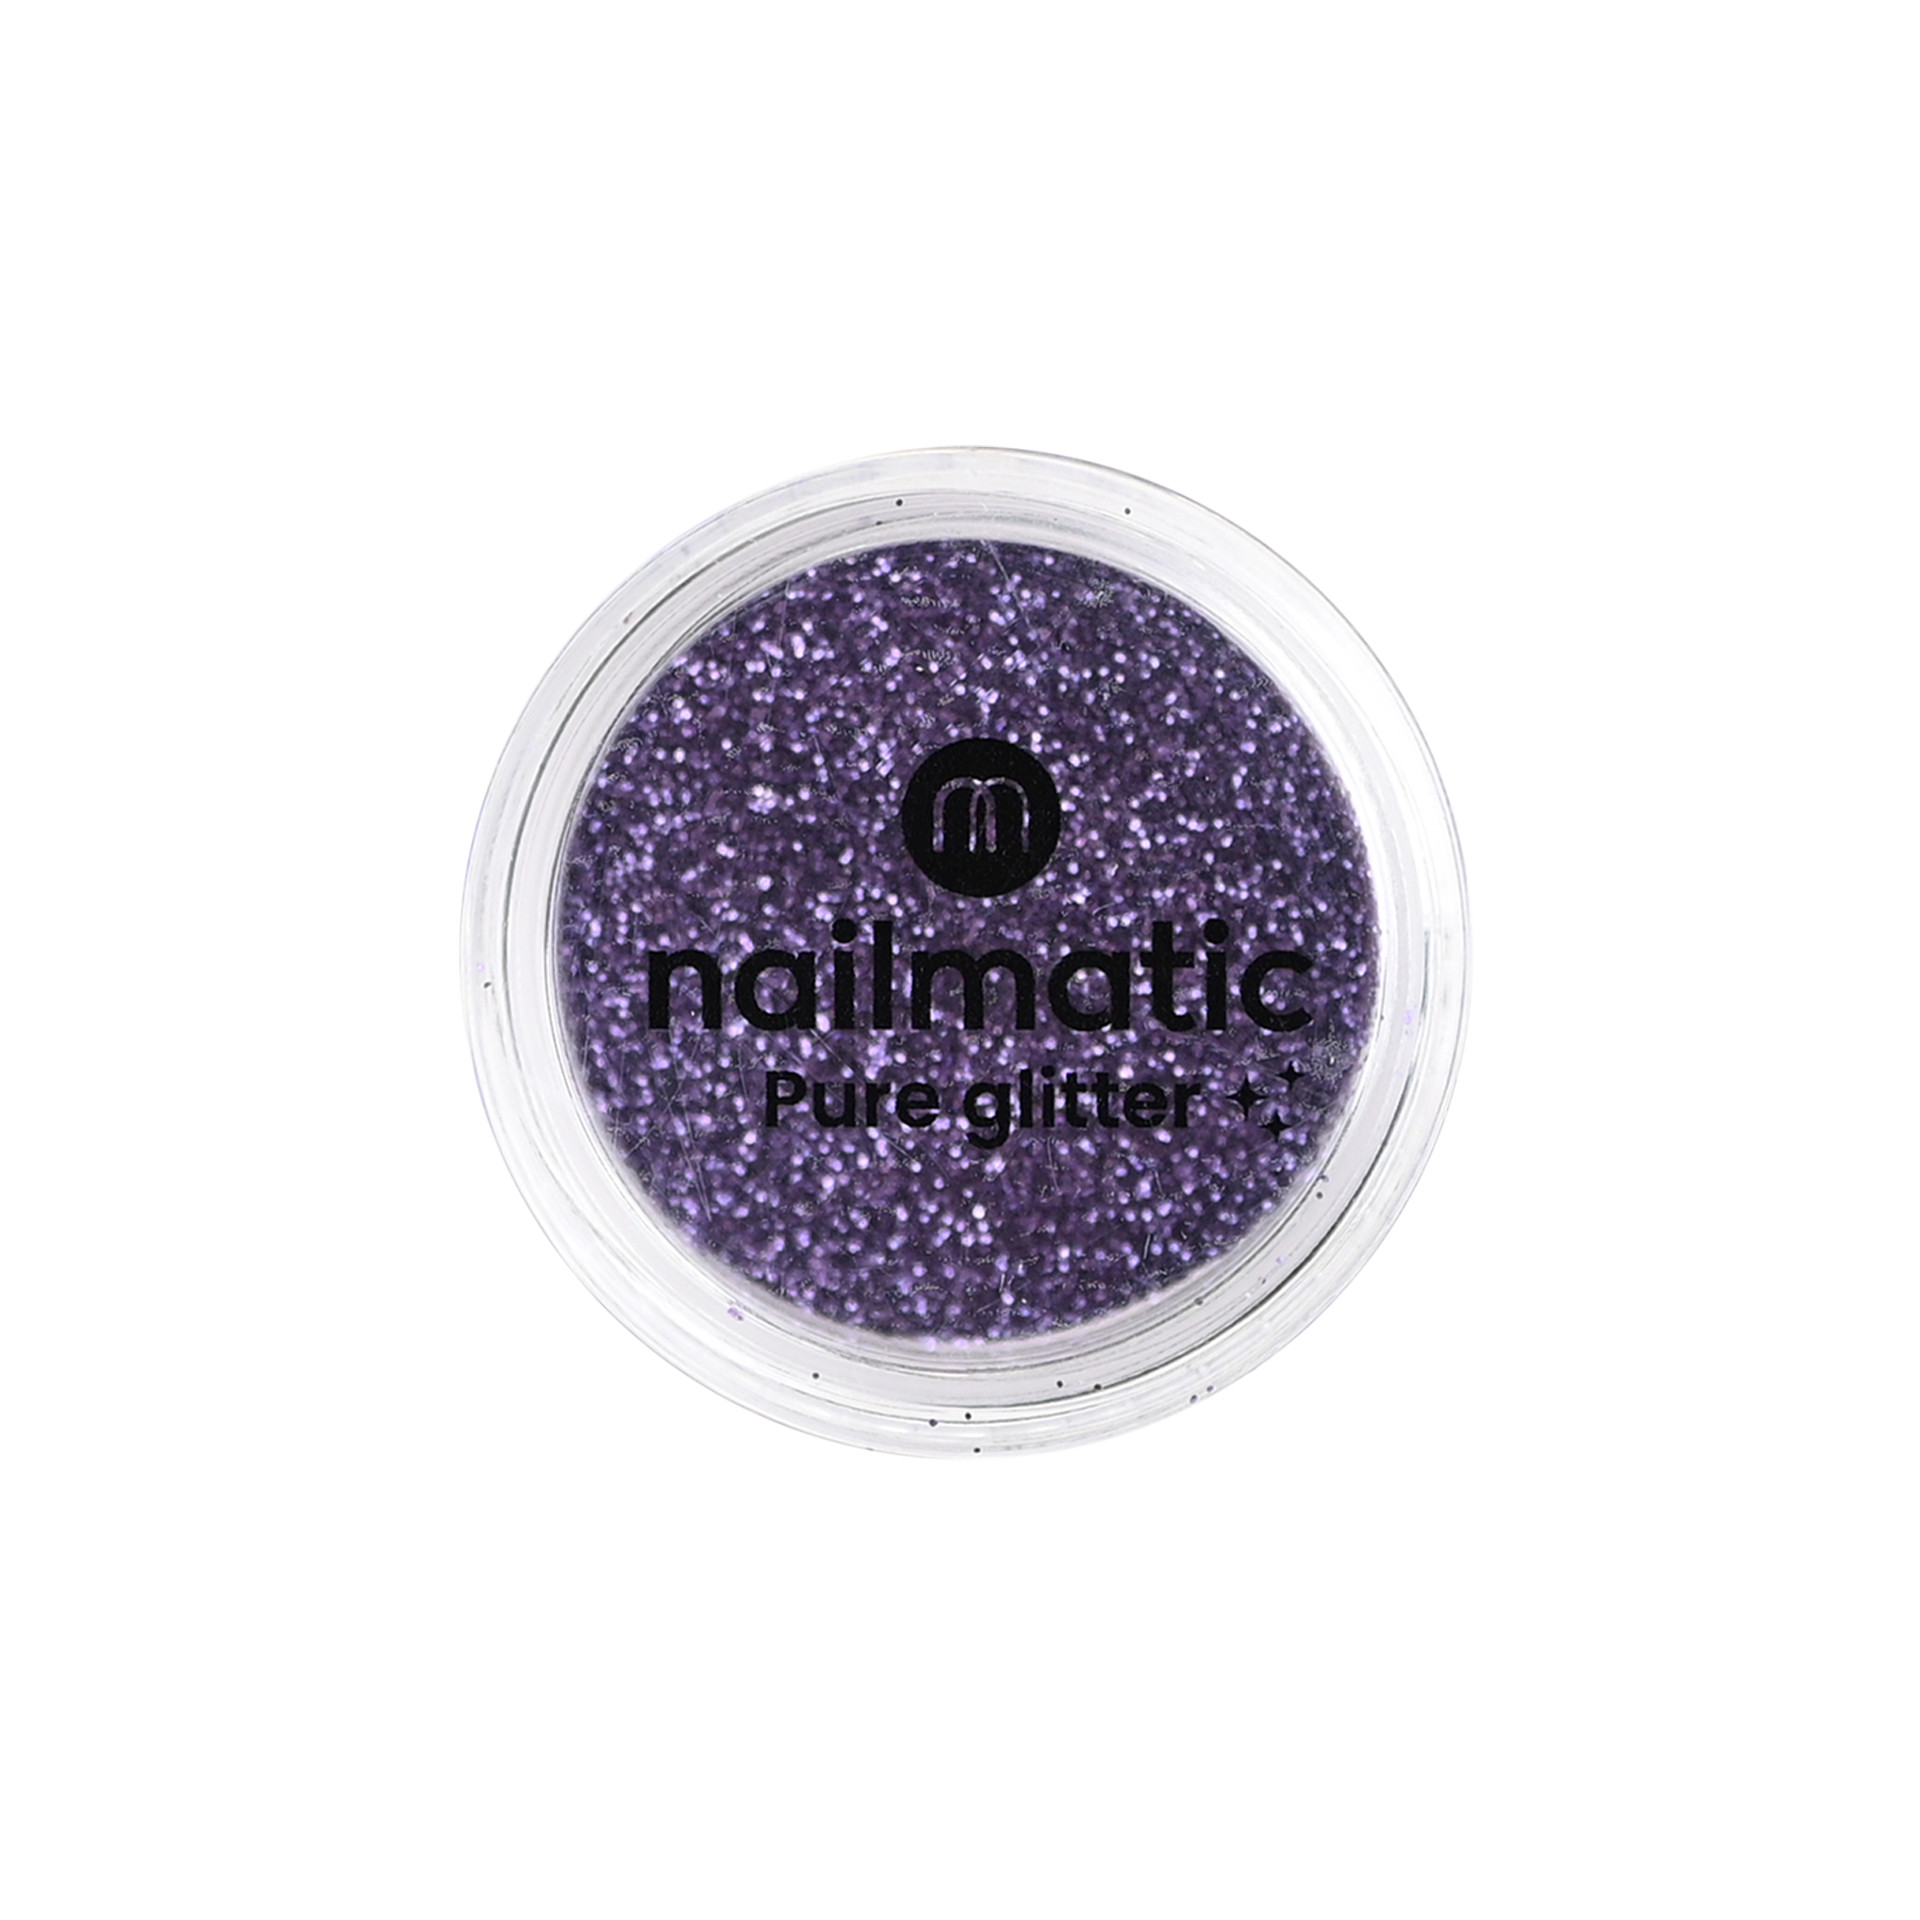 Petites paillettes violettes biodégradables Pure Glitter avec packaging